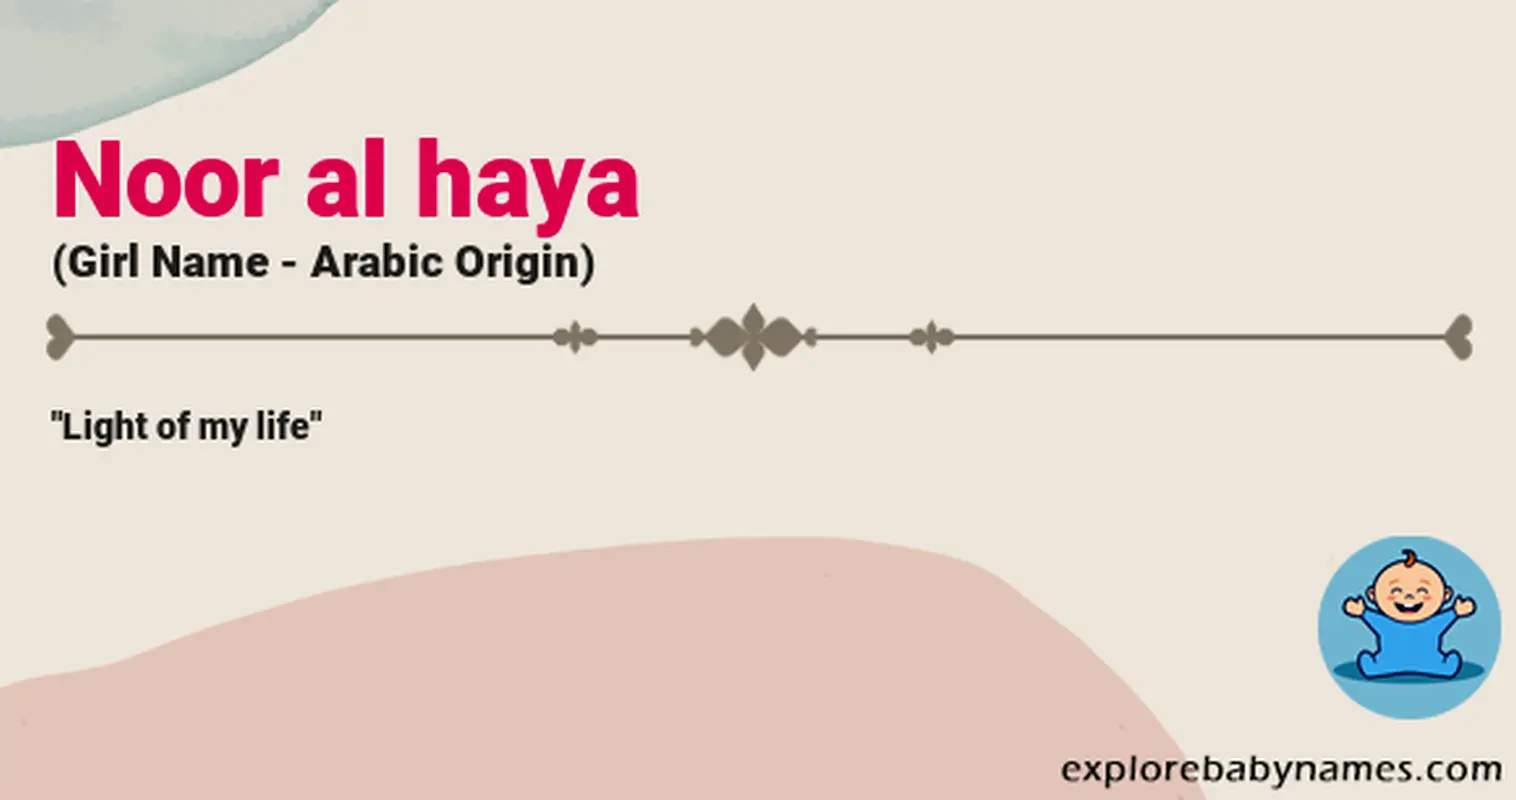 Meaning of Noor al haya